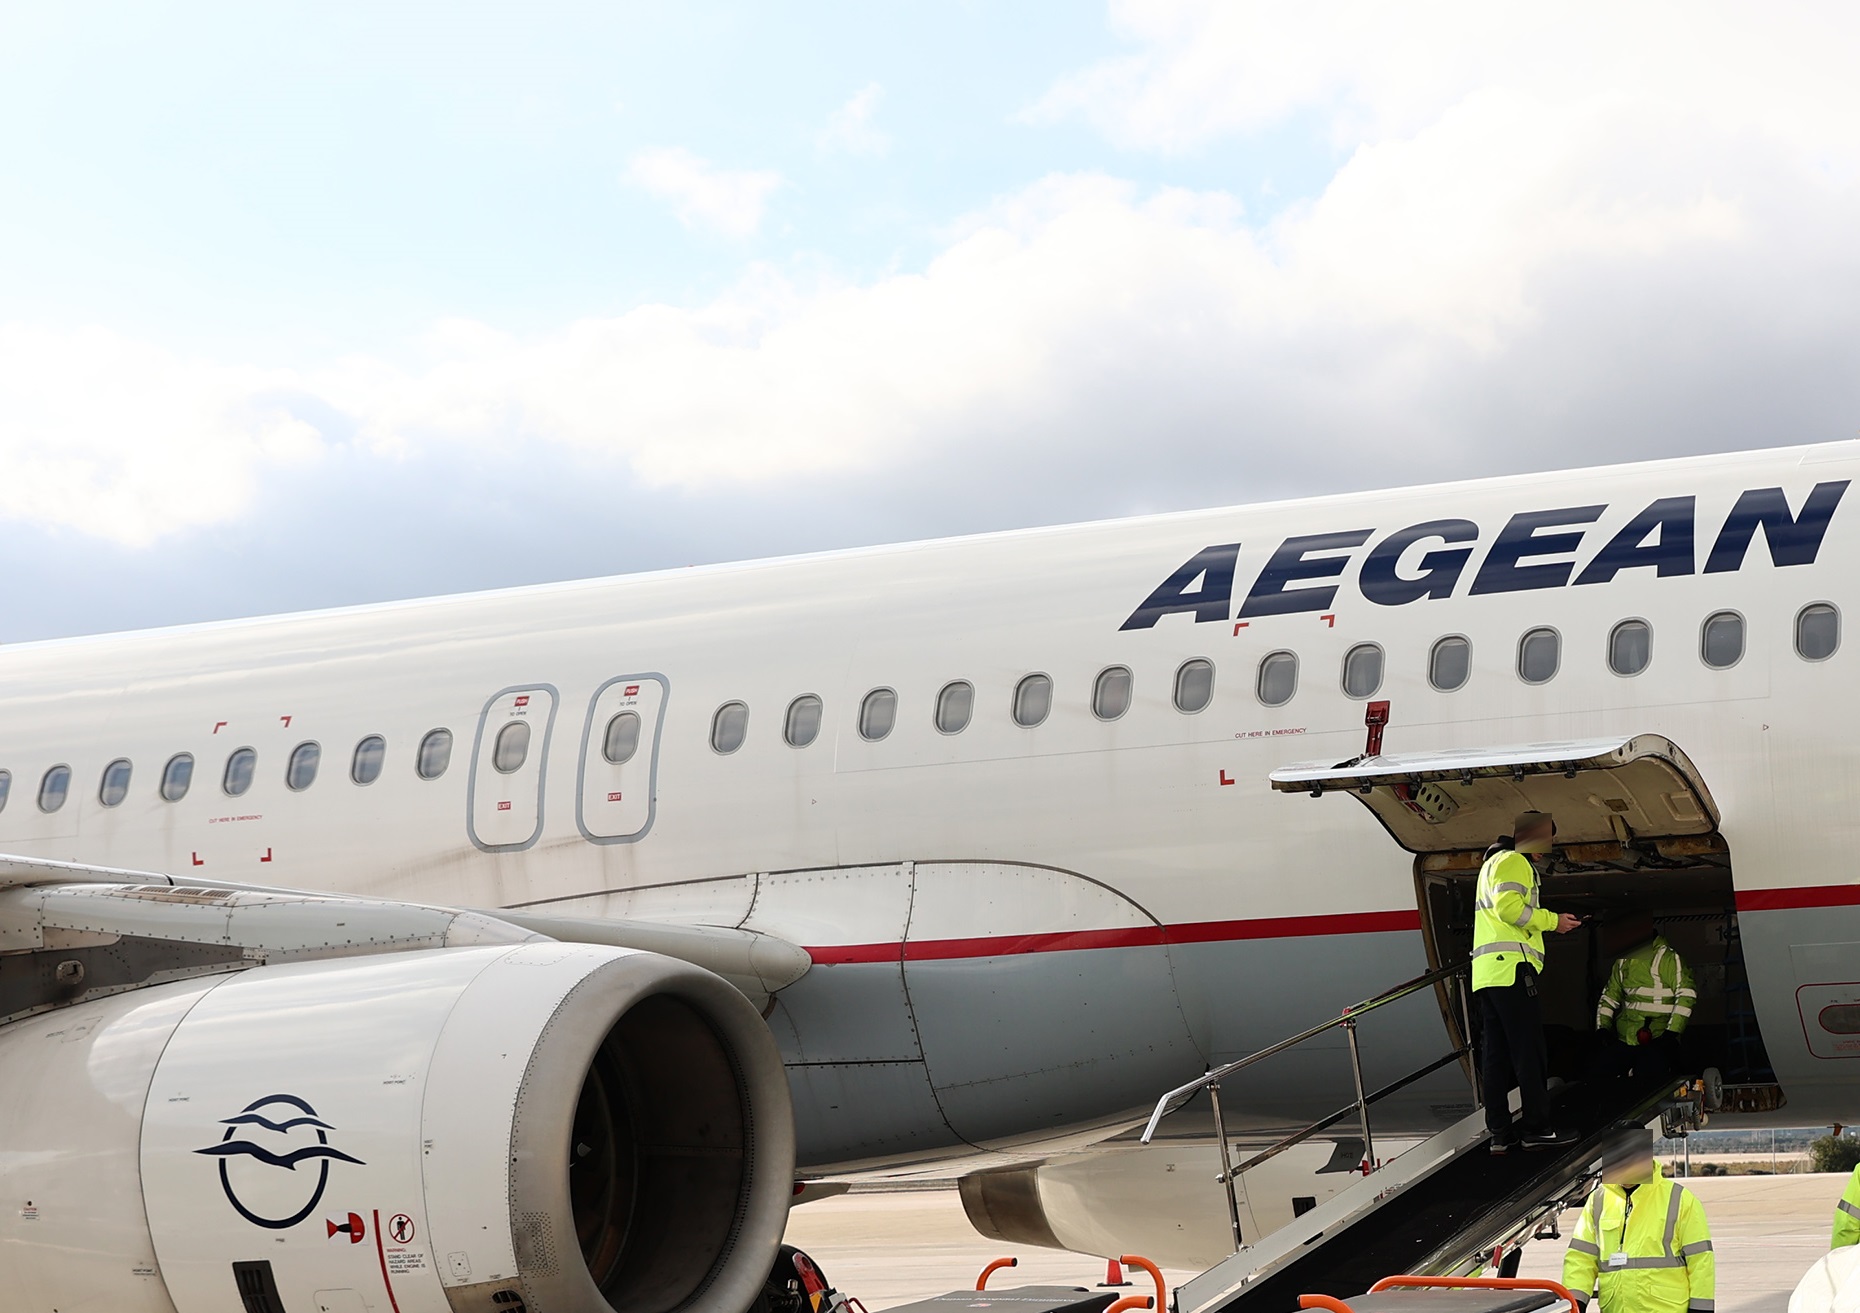 Σεισμός στο Μαρόκο – AEGEAN: Έκτακτη ειδική πτήση για τον επαναπατρισμό όσων επιθυμούν να επιστρέψουν στην Ελλάδα